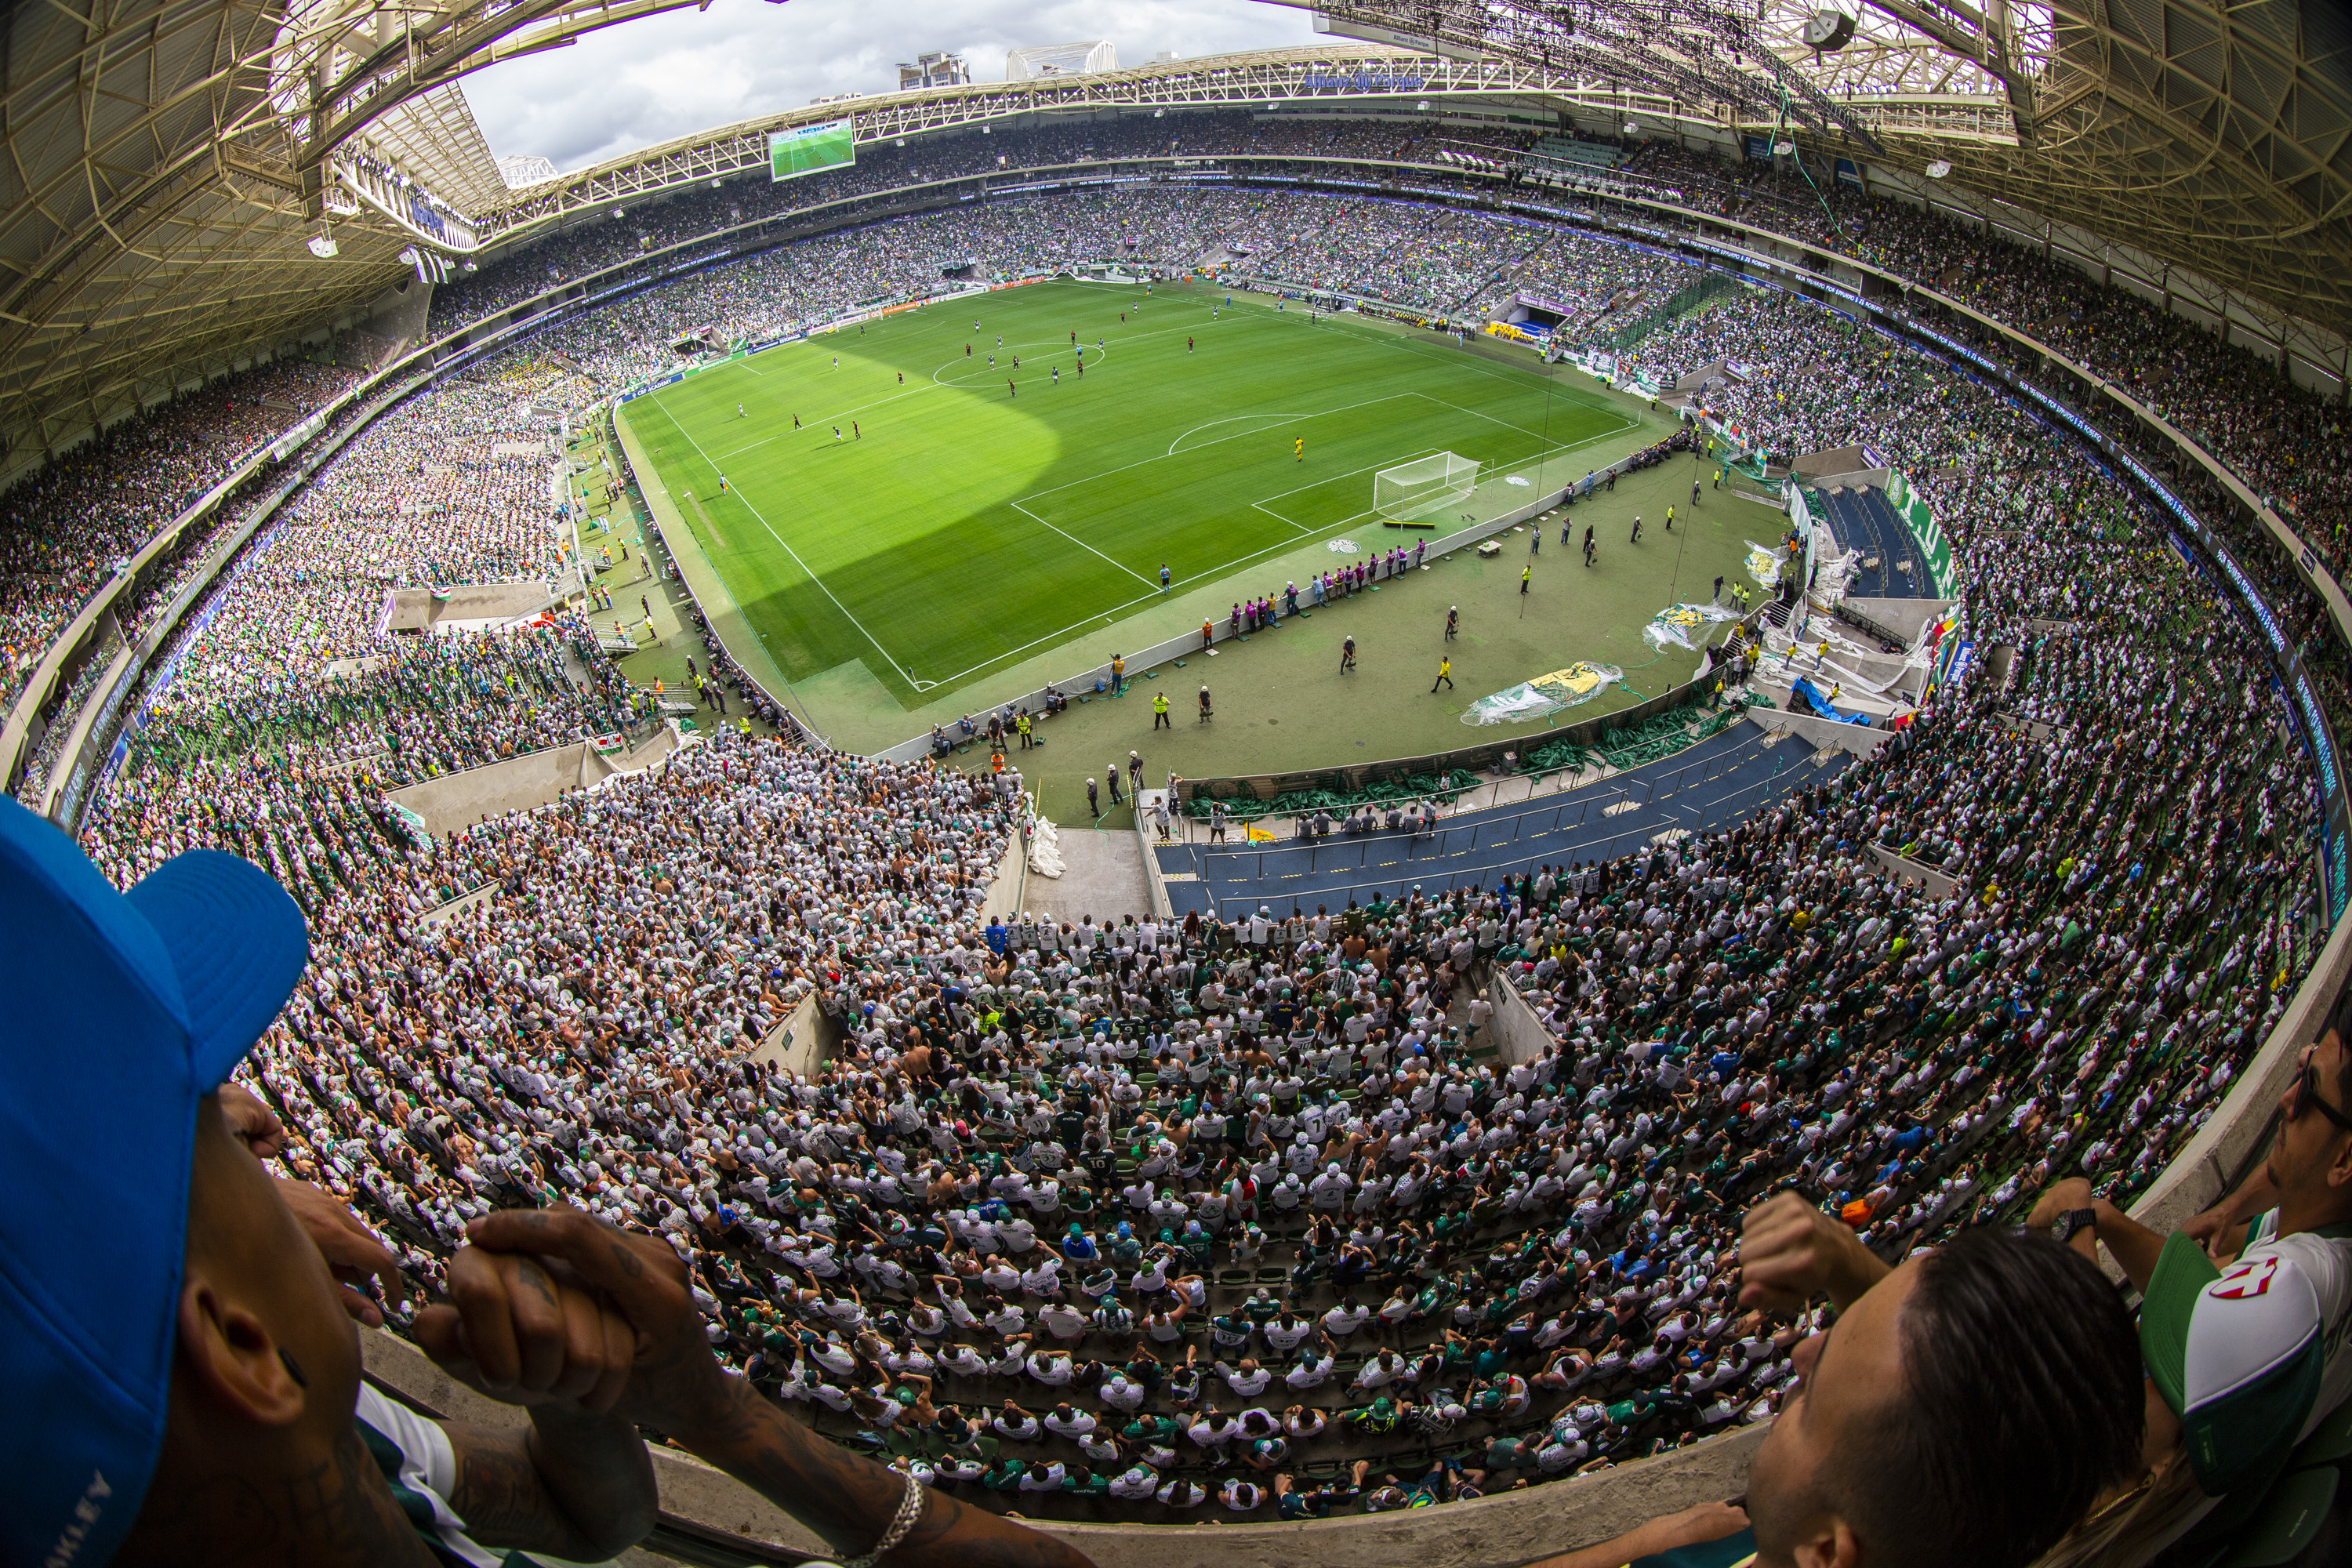 Allianz Parque, Palmeiras, Sociedade Esportiva Palmeiras, copa Do